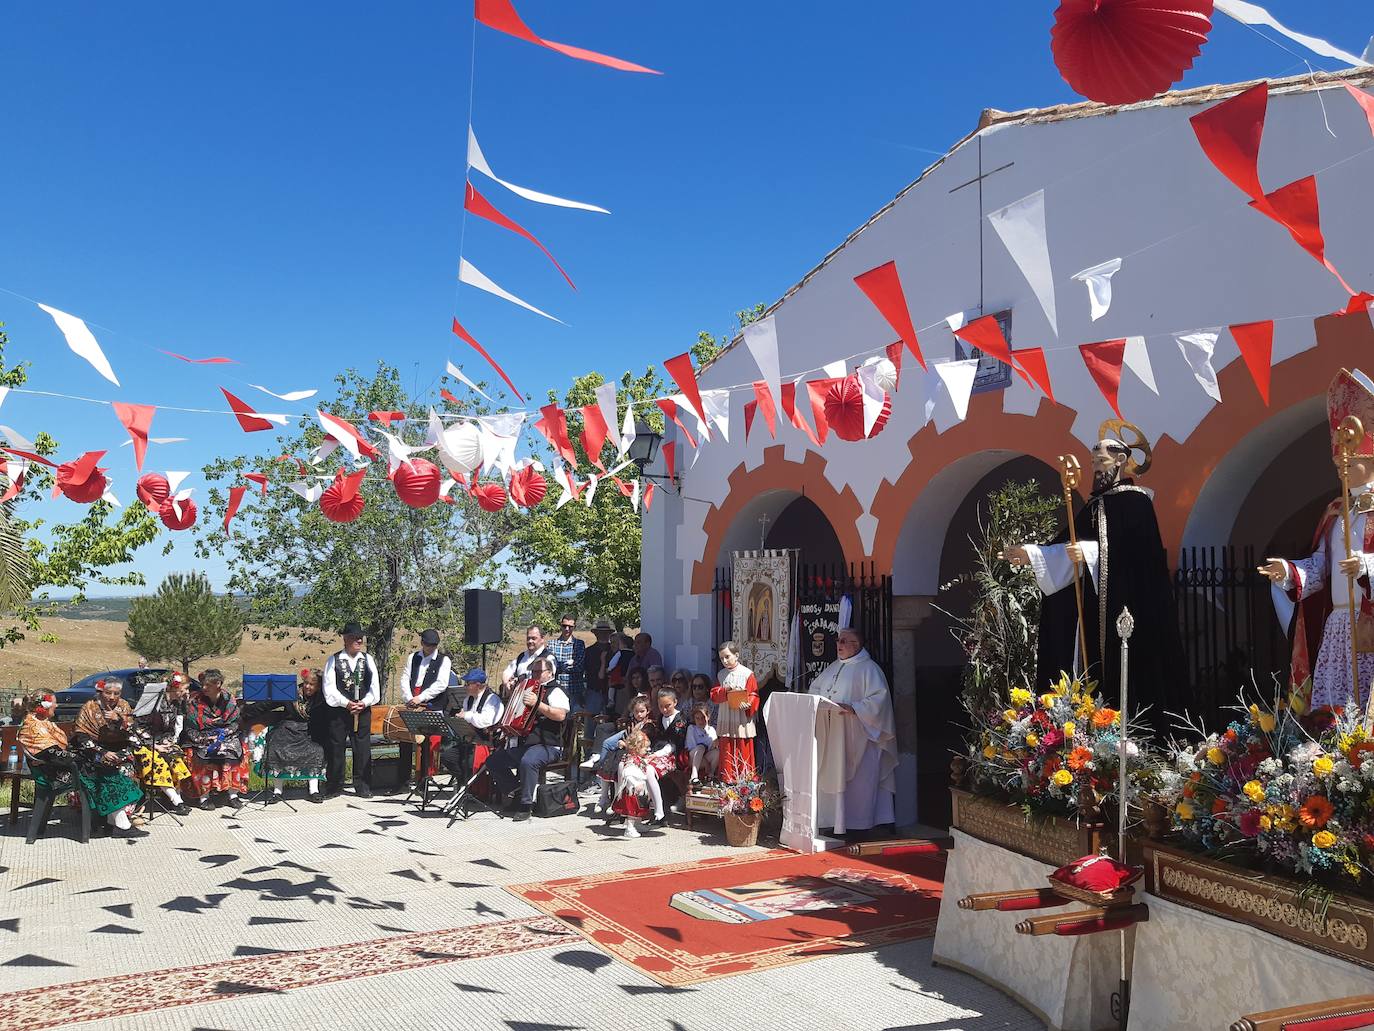 Imagen principal - La romería de San Benito se celebra por todo lo alto